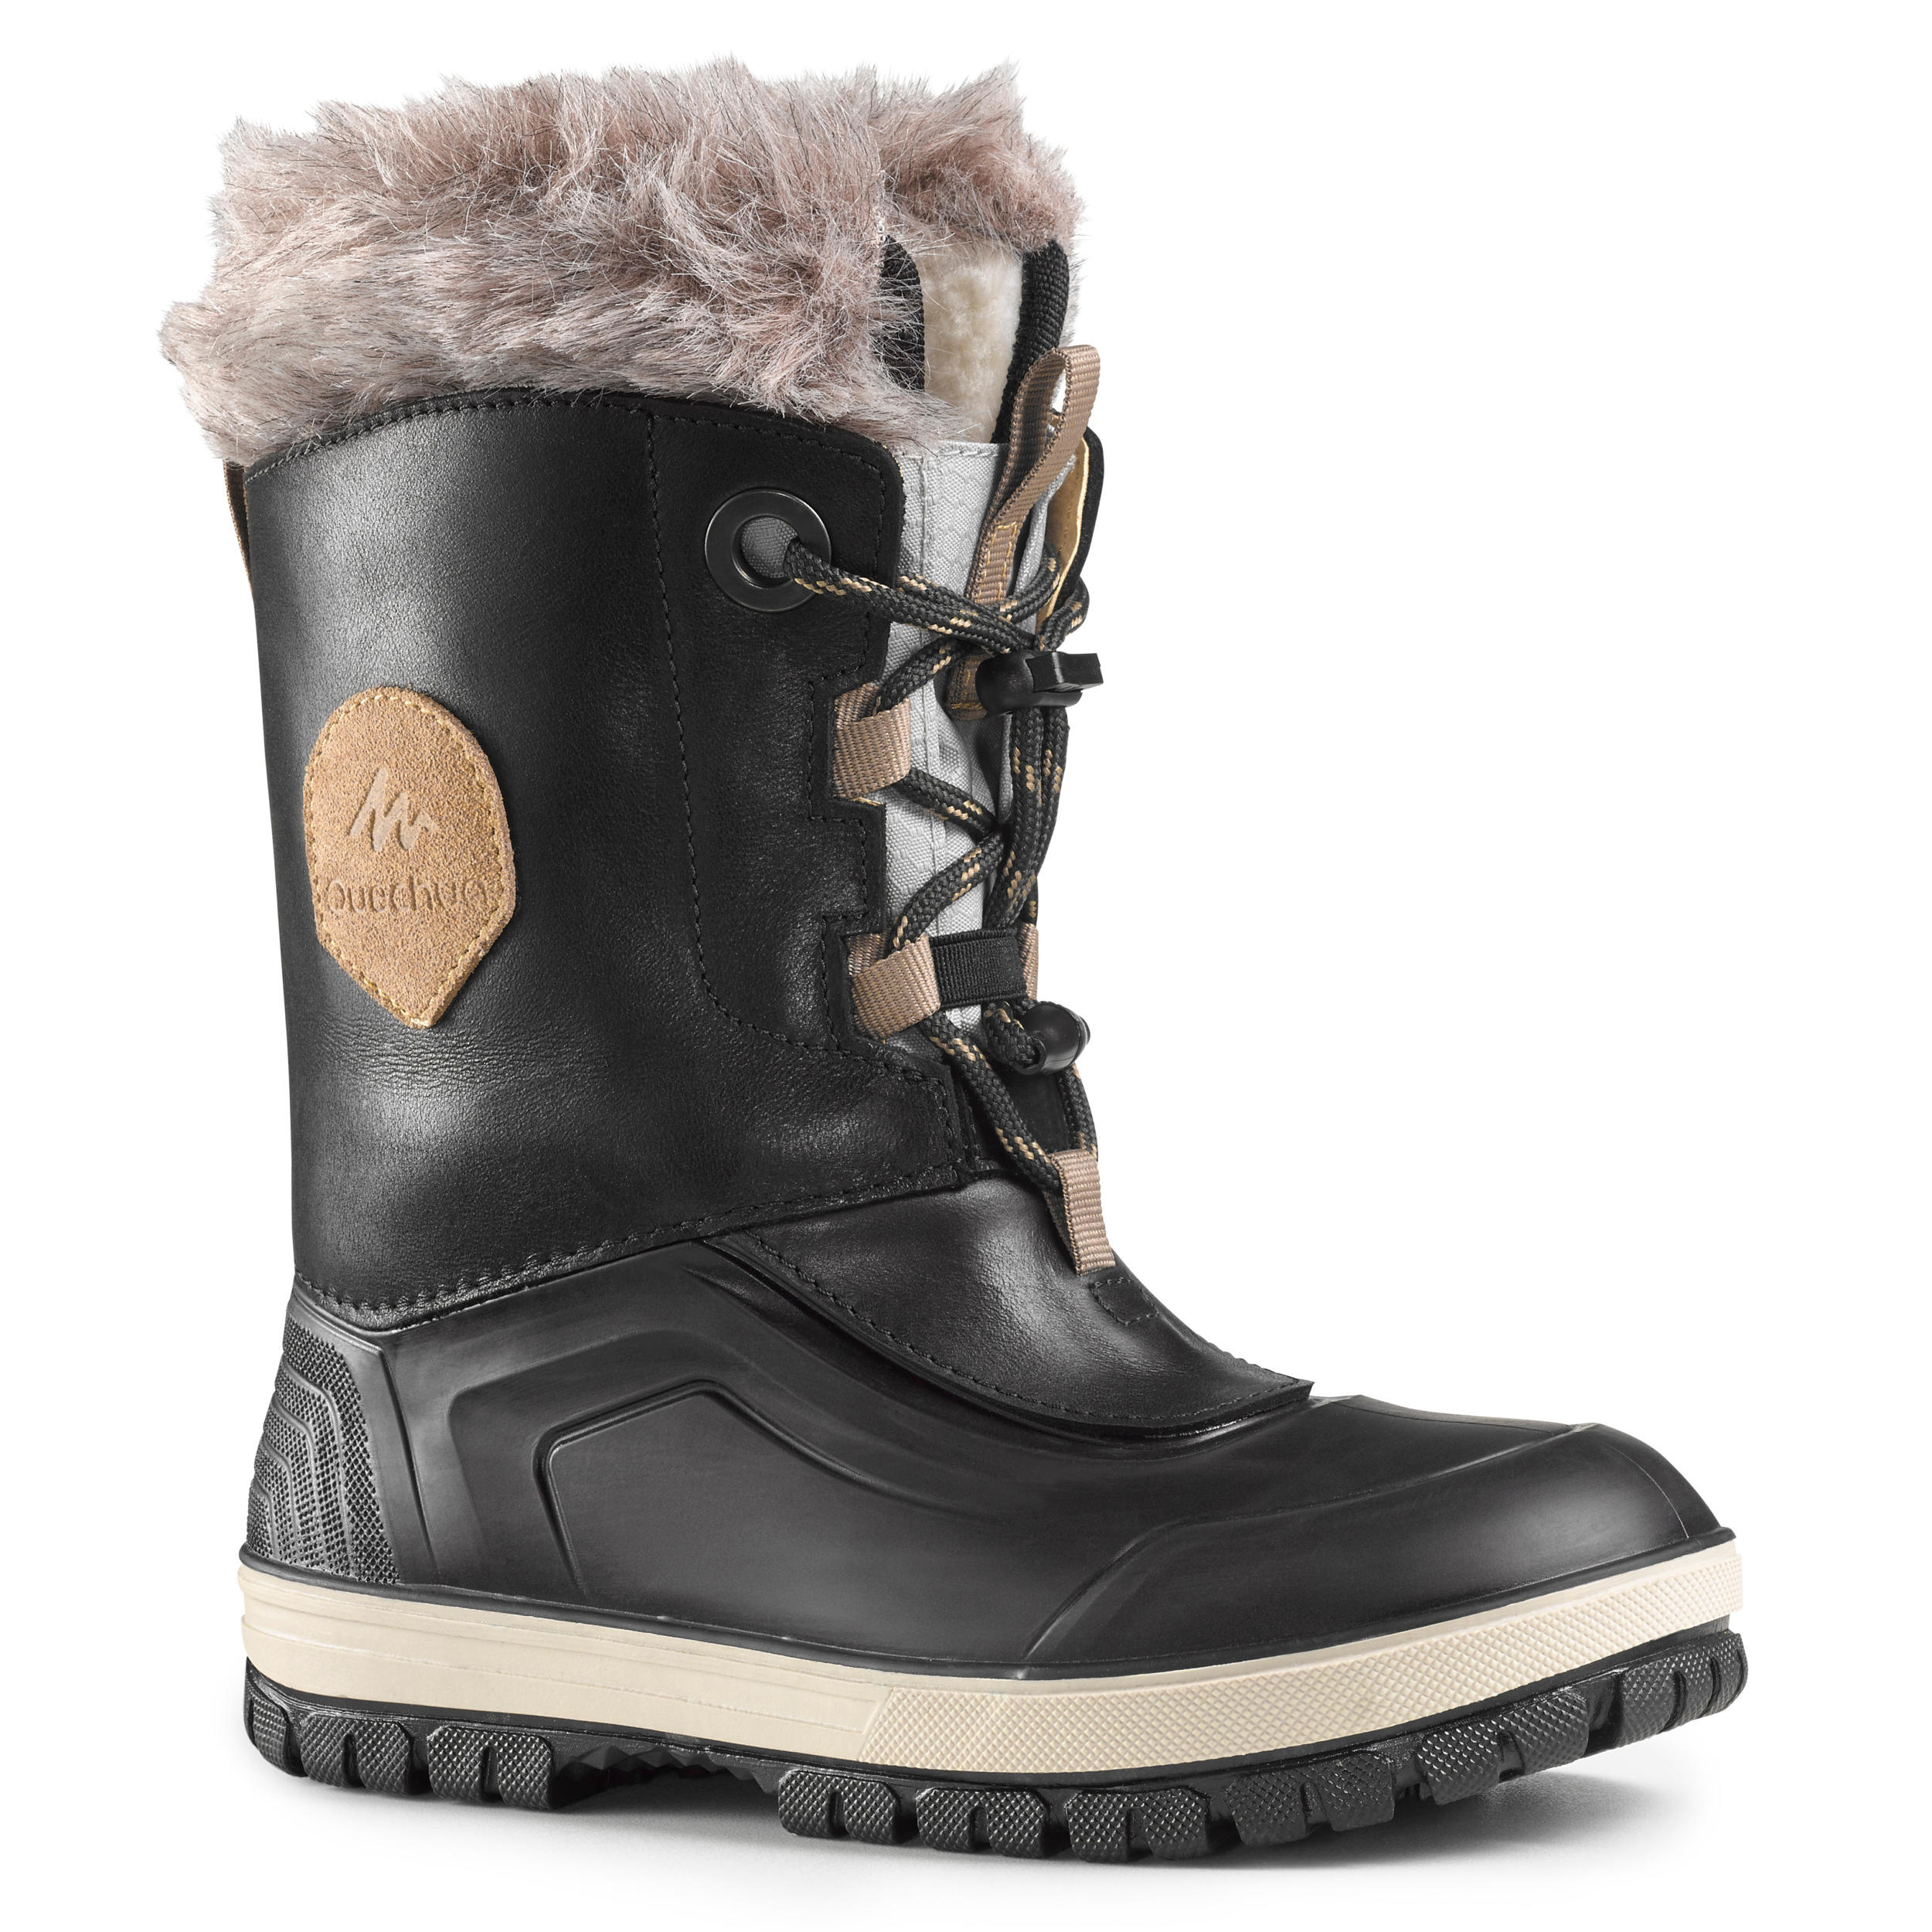 quechua sh5 boots